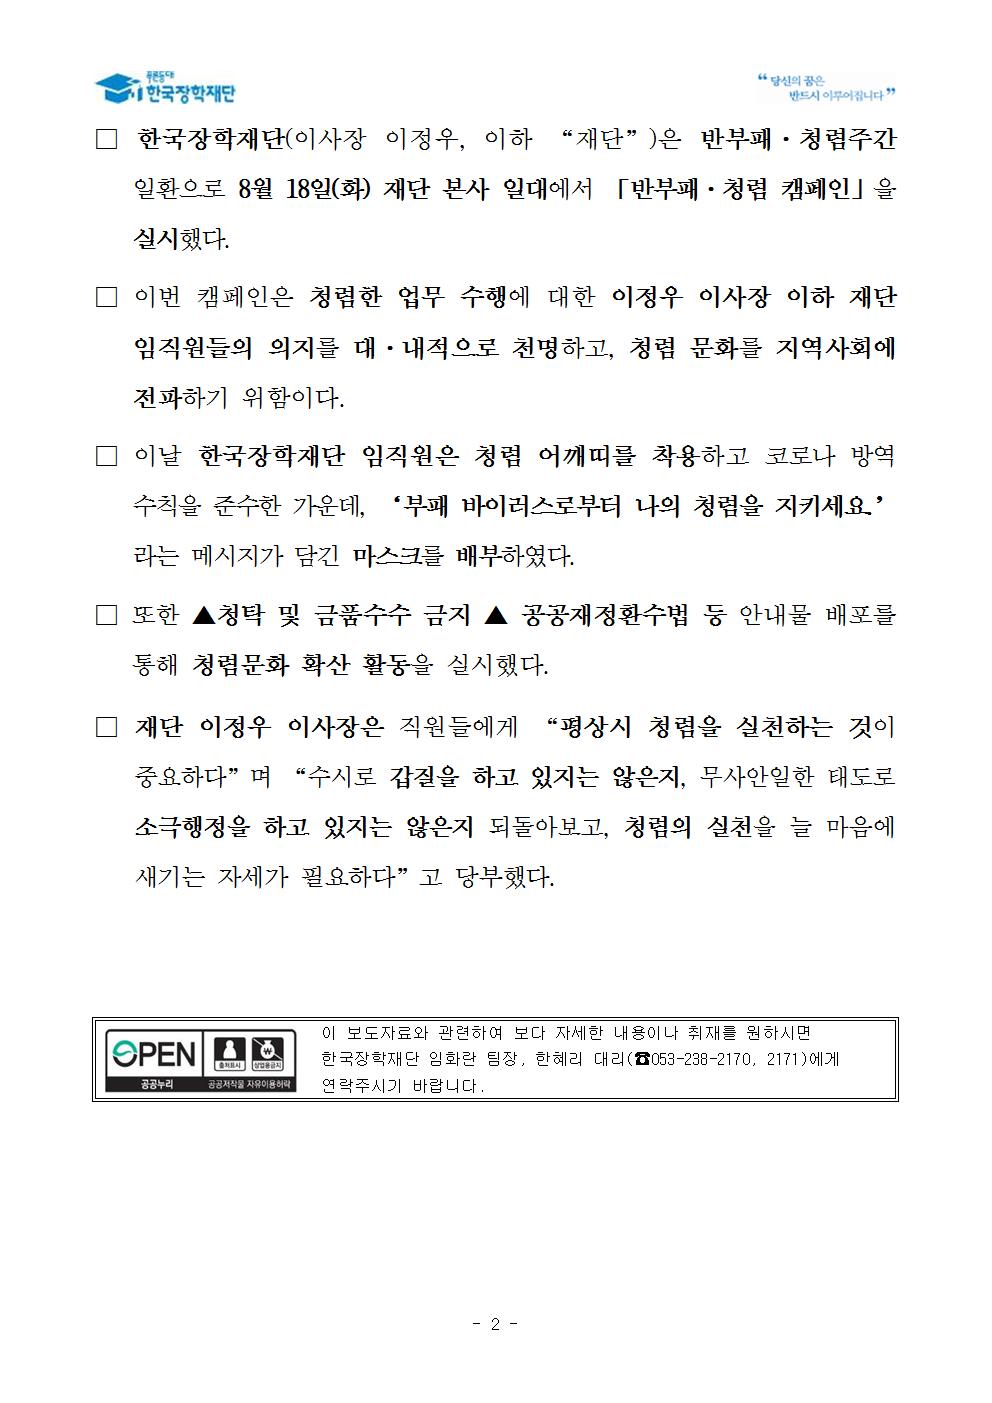 08-19(수)[보도자료] 한국장학재단, 지역사회 청렴문화 확산 위한 반부패·청렴 캠페인 개최002.jpg